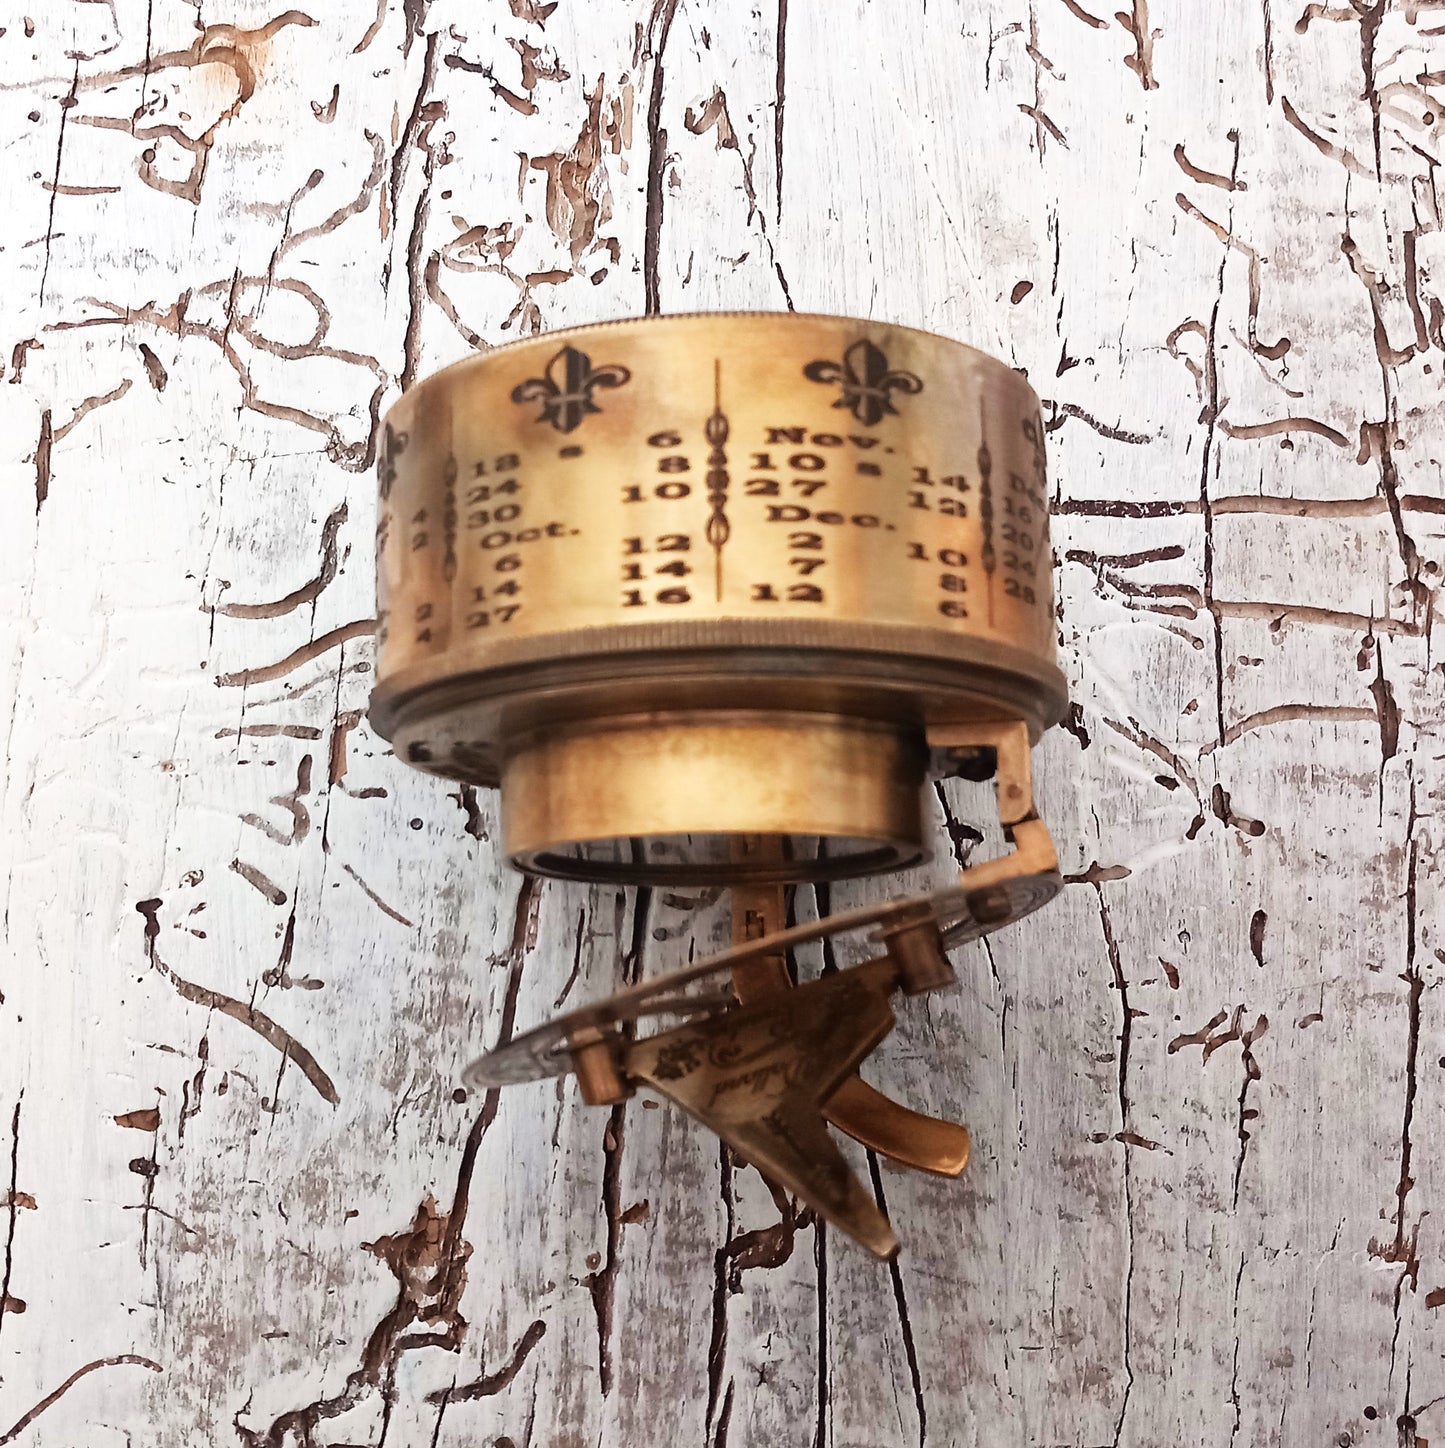 Vintage Retro-Kompass mit Sonnenuhr und Kalender in Lederbox